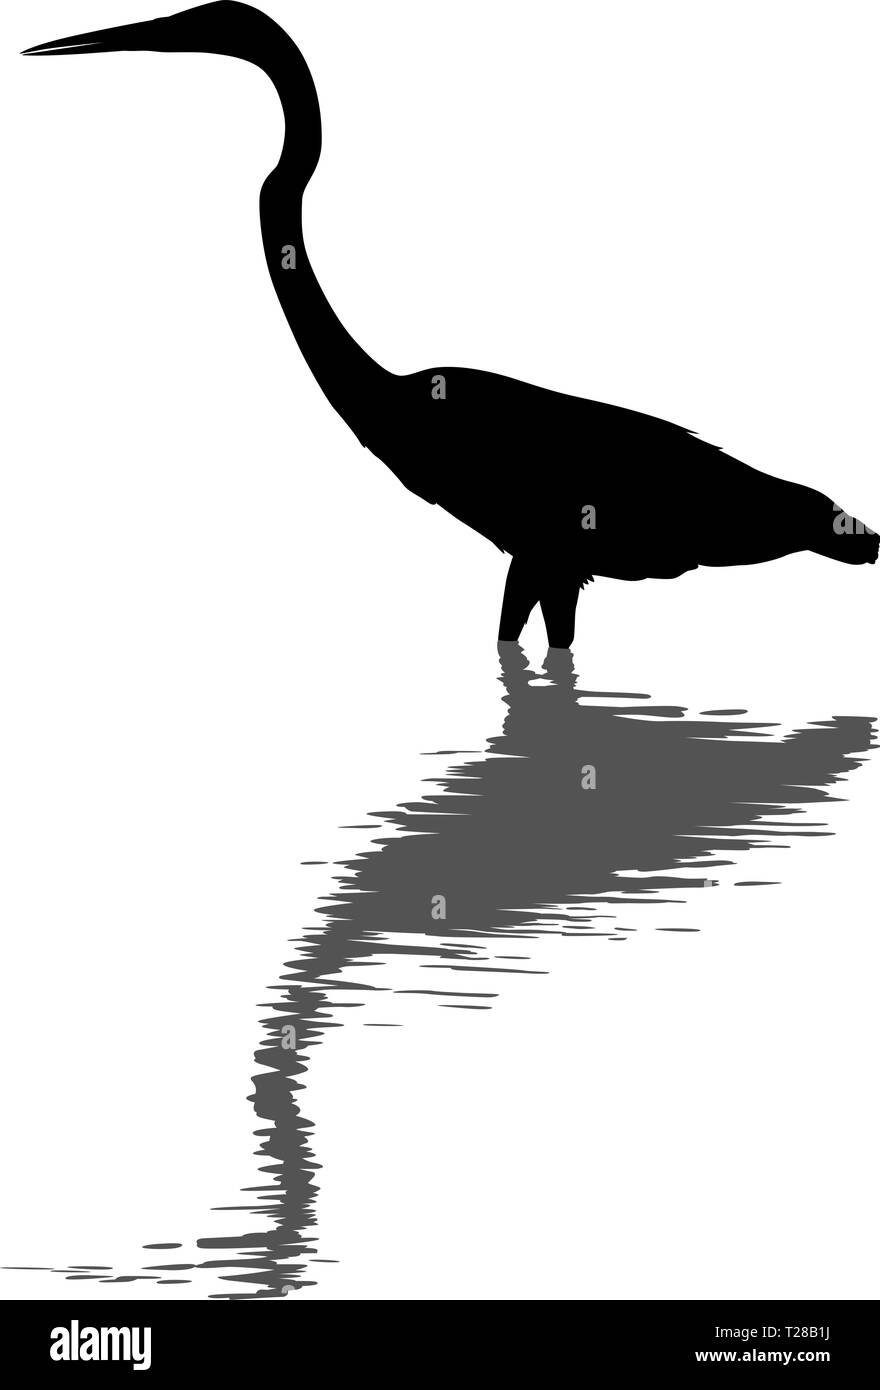 Vecteur modifiable silhouette d'une grande aigrette debout en eau profonde avec sa réflexion Illustration de Vecteur